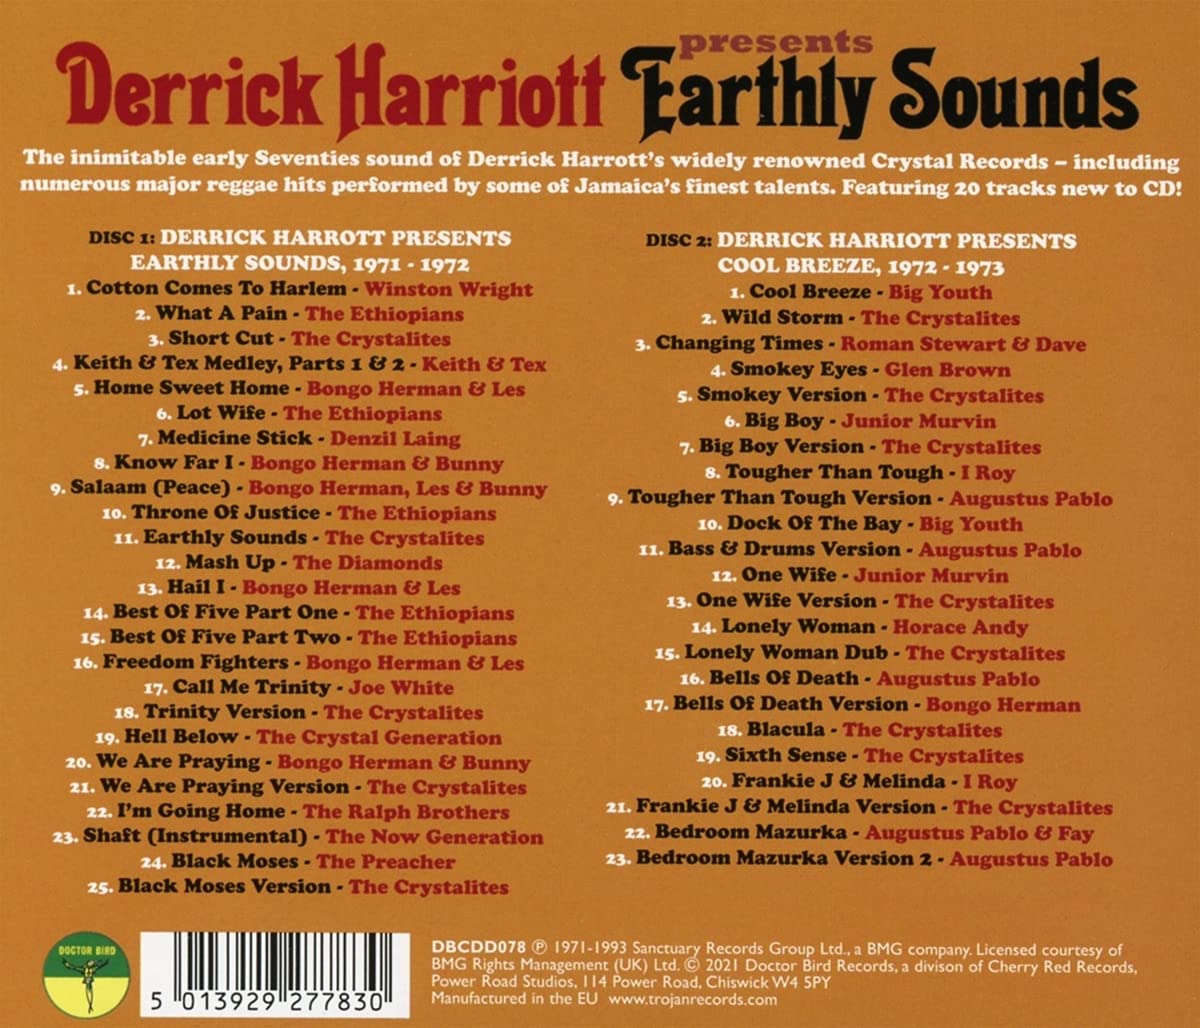 클래식 레게 사운즈 (Classic Reggae Sounds from the Crystal Vaults - Derrick Harriott Presents Earthly Sounds) 